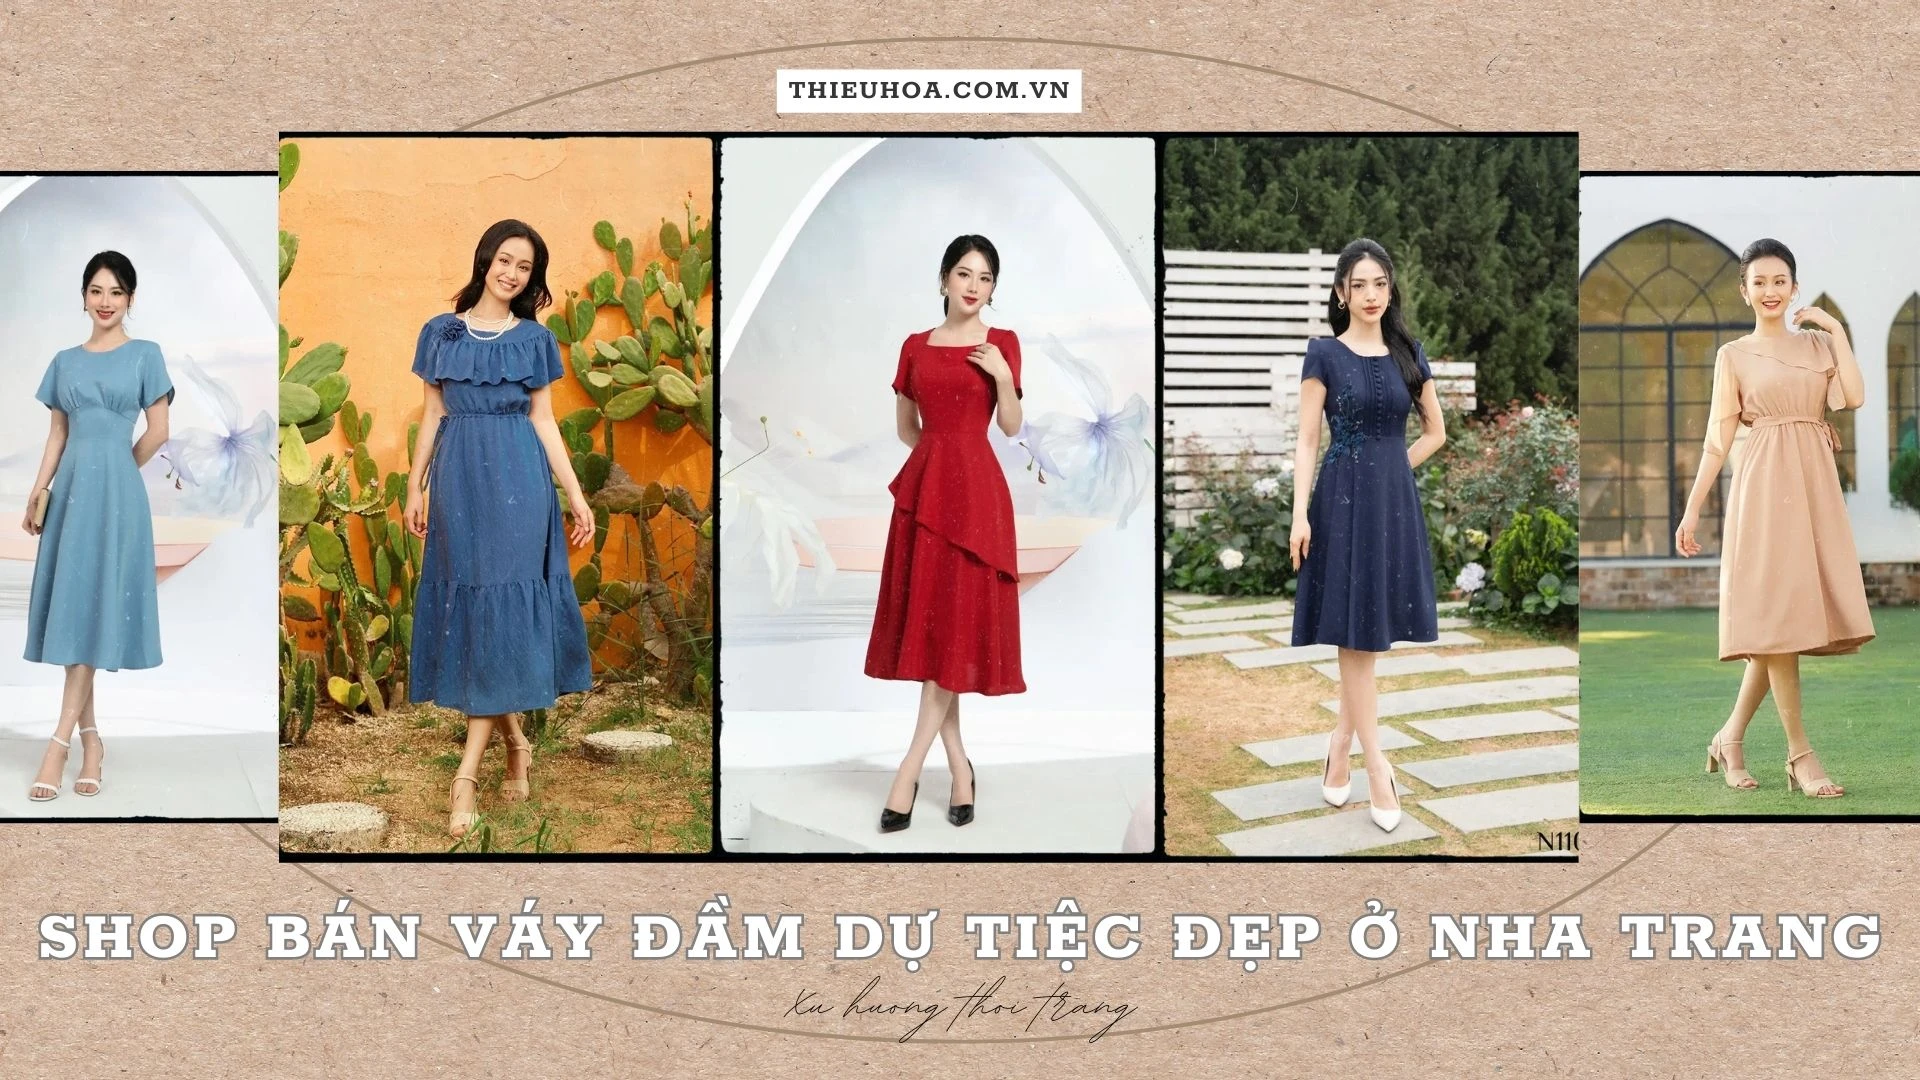 TOP 13 shop bán váy đầm dự tiệc đẹp sang trọng ở Nha Trang